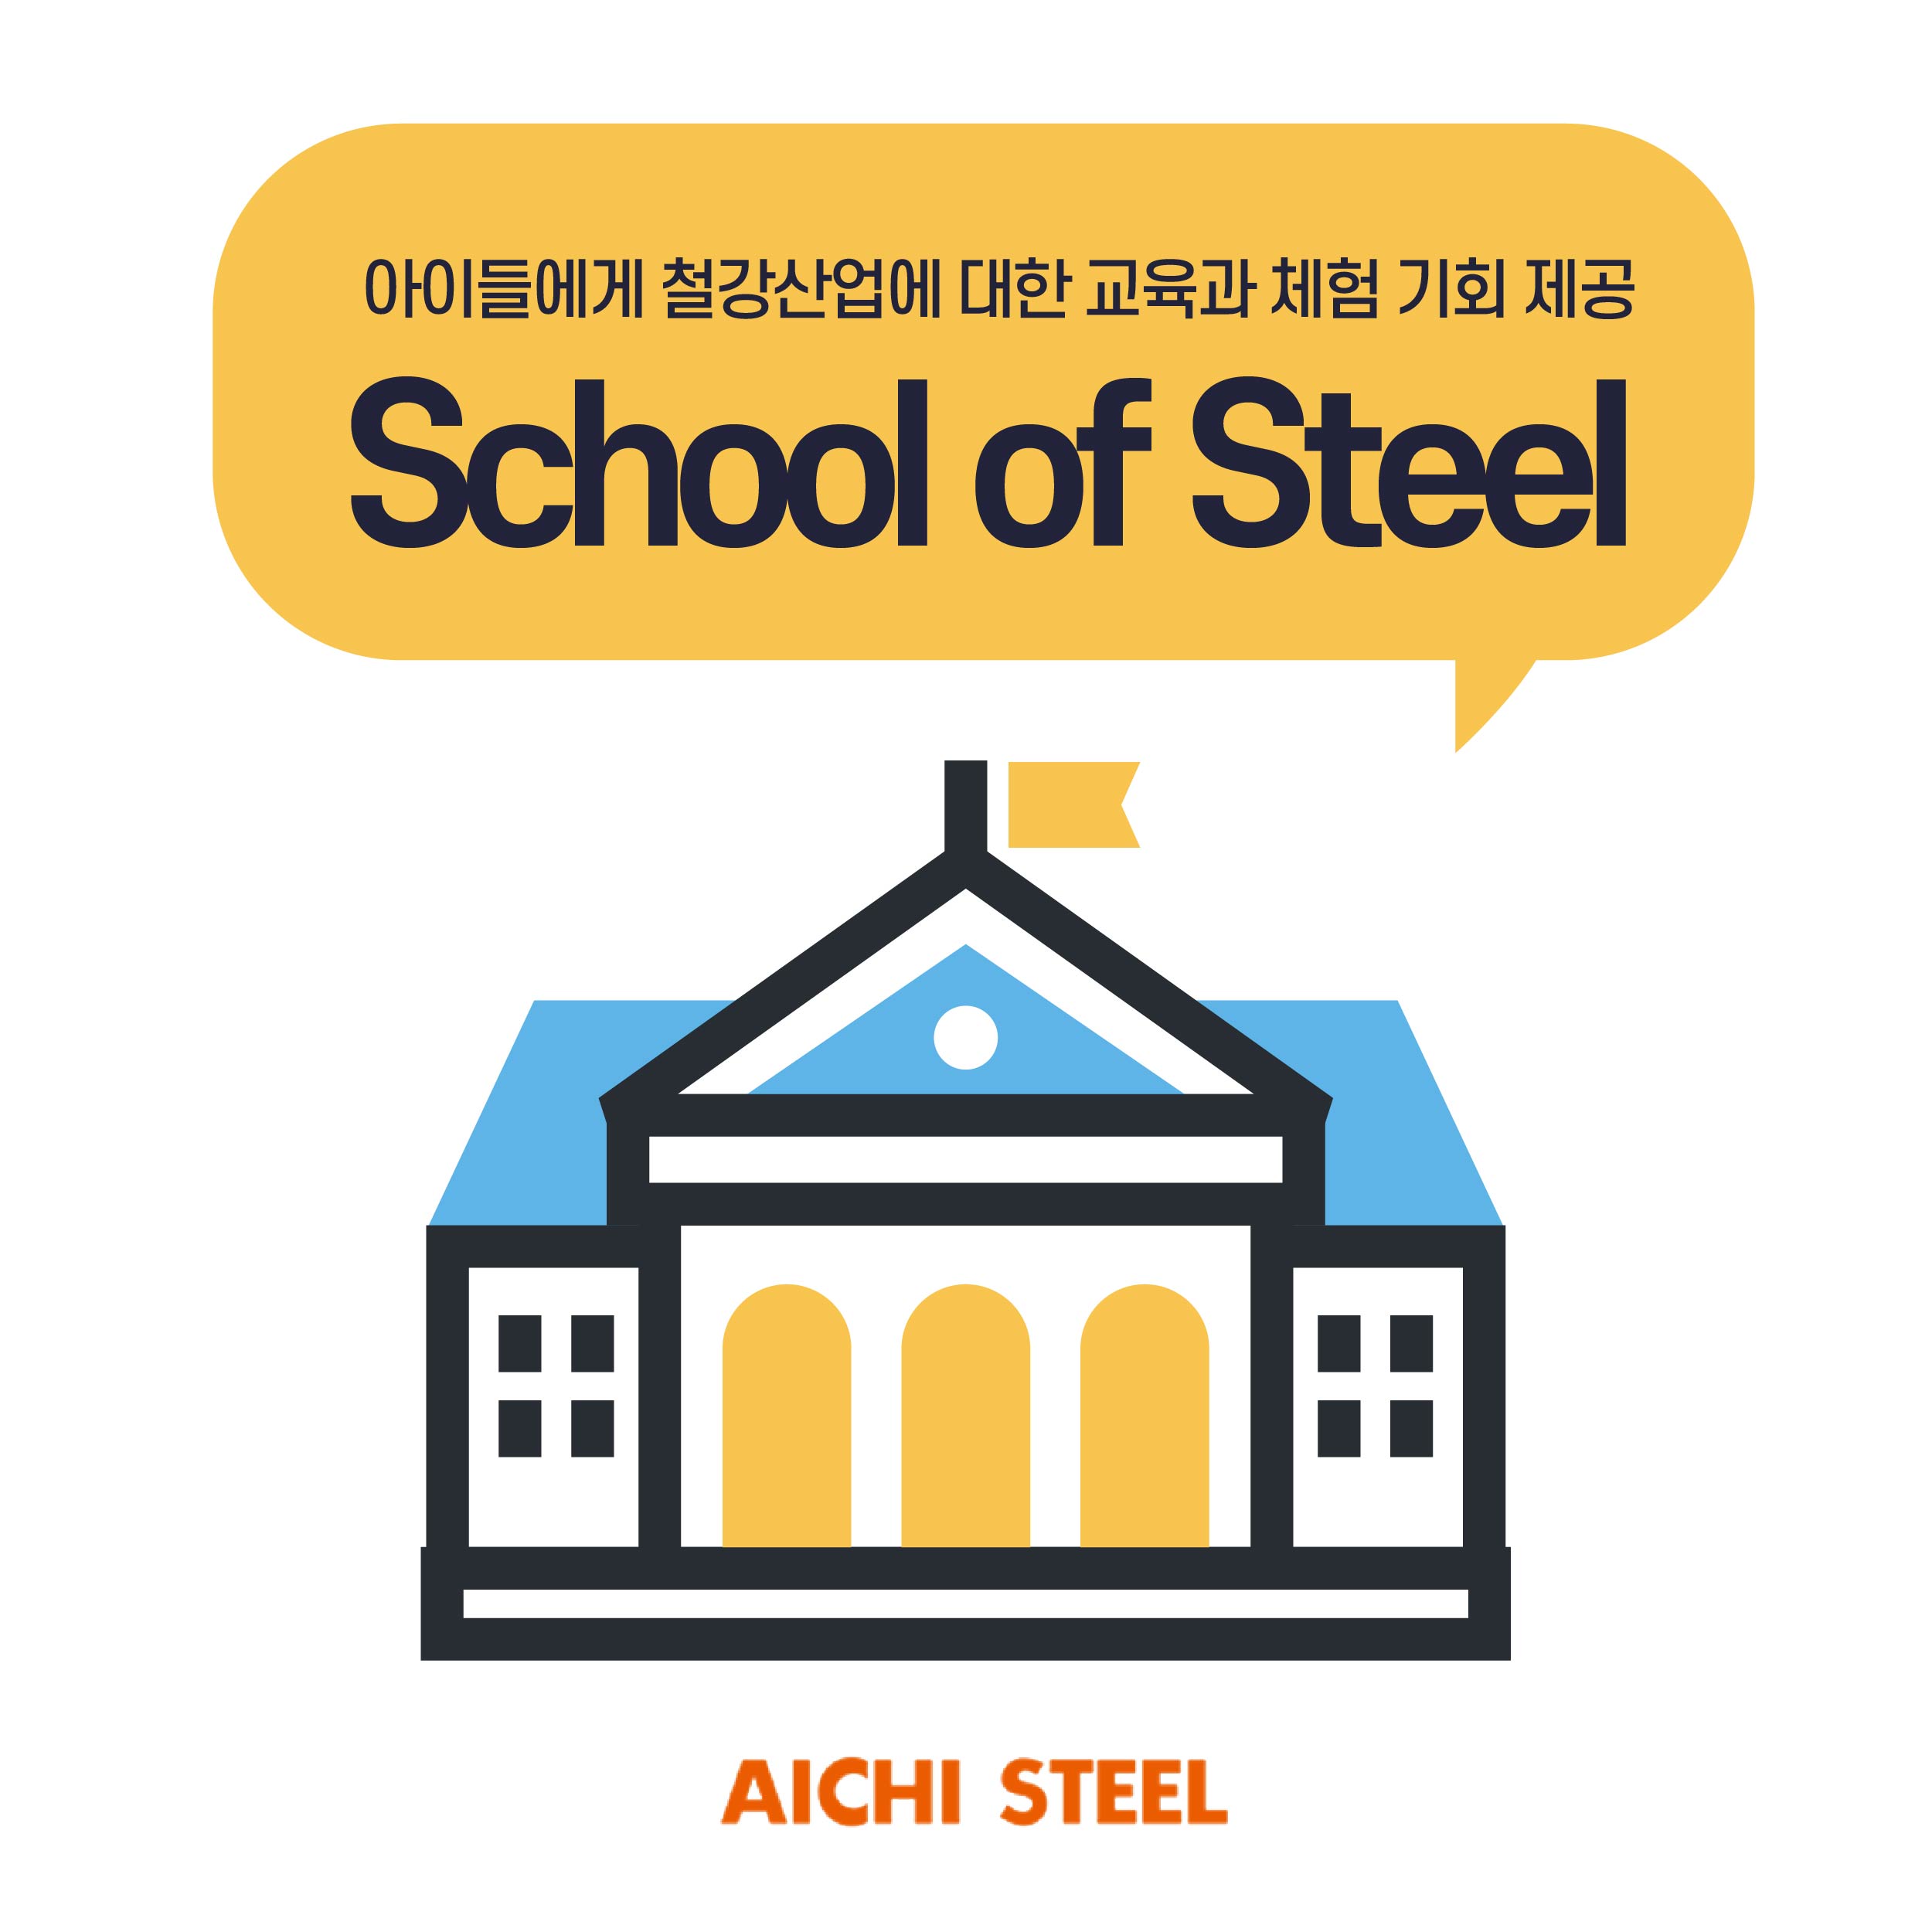 아이들에게 철강산업에 대한 교육과 체험 기회 제공 school of steel